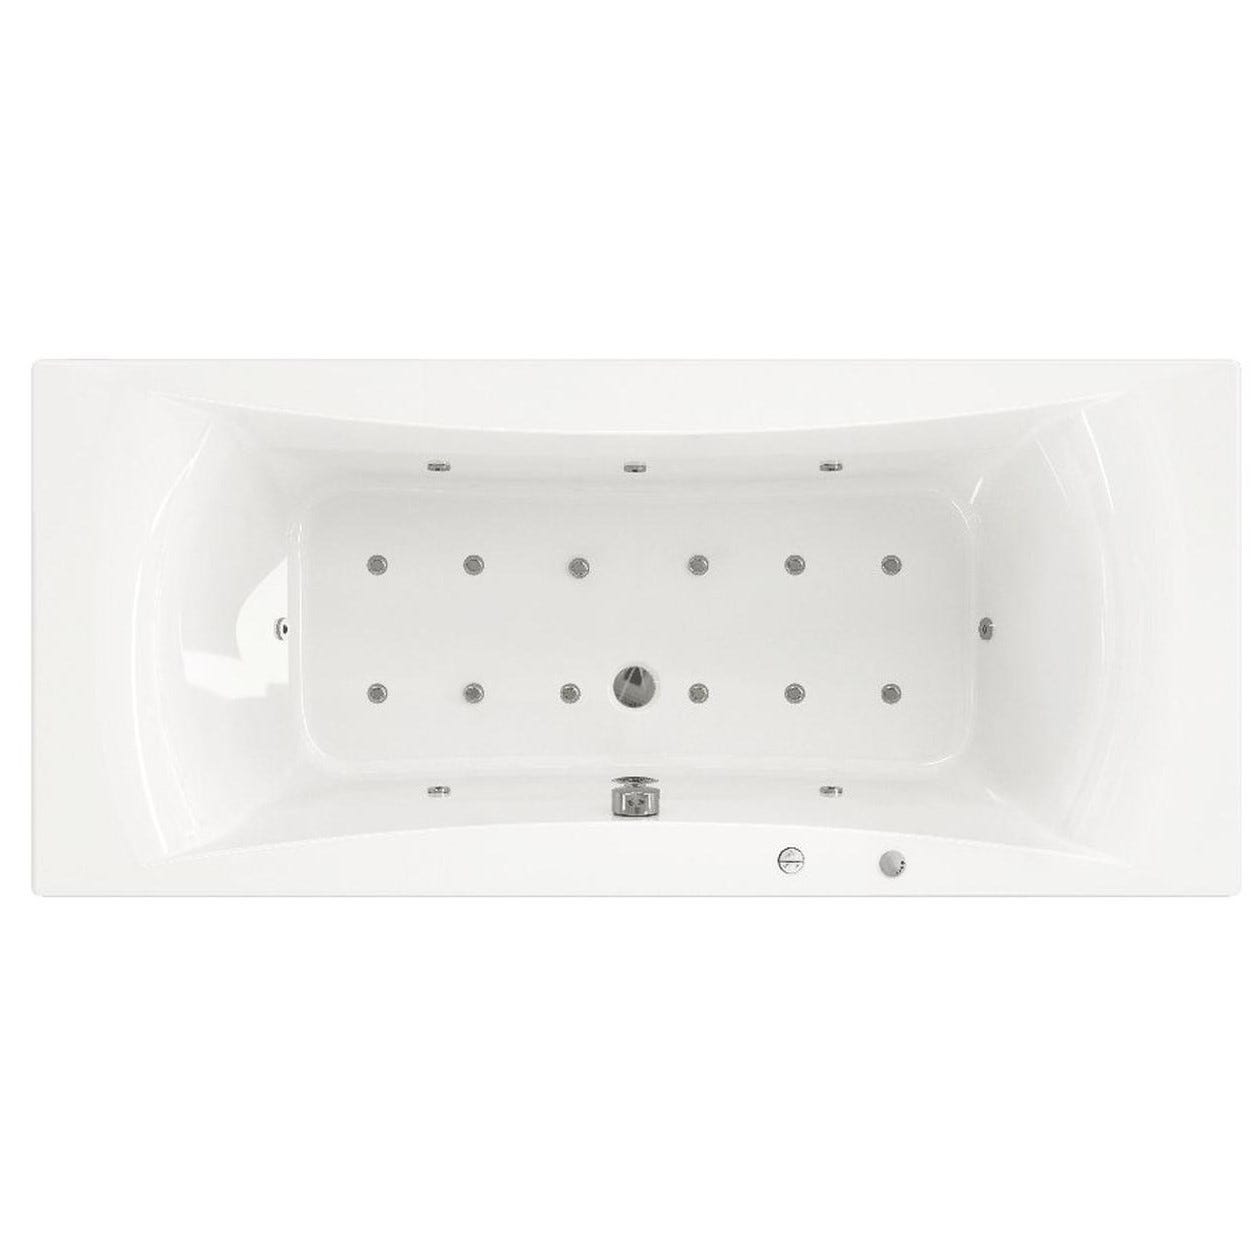 Baignoire balnéo CONCERTO 170x75 sur châssis métal, système balnéo STAR MIXTE DIGIT tête bain à droite 3